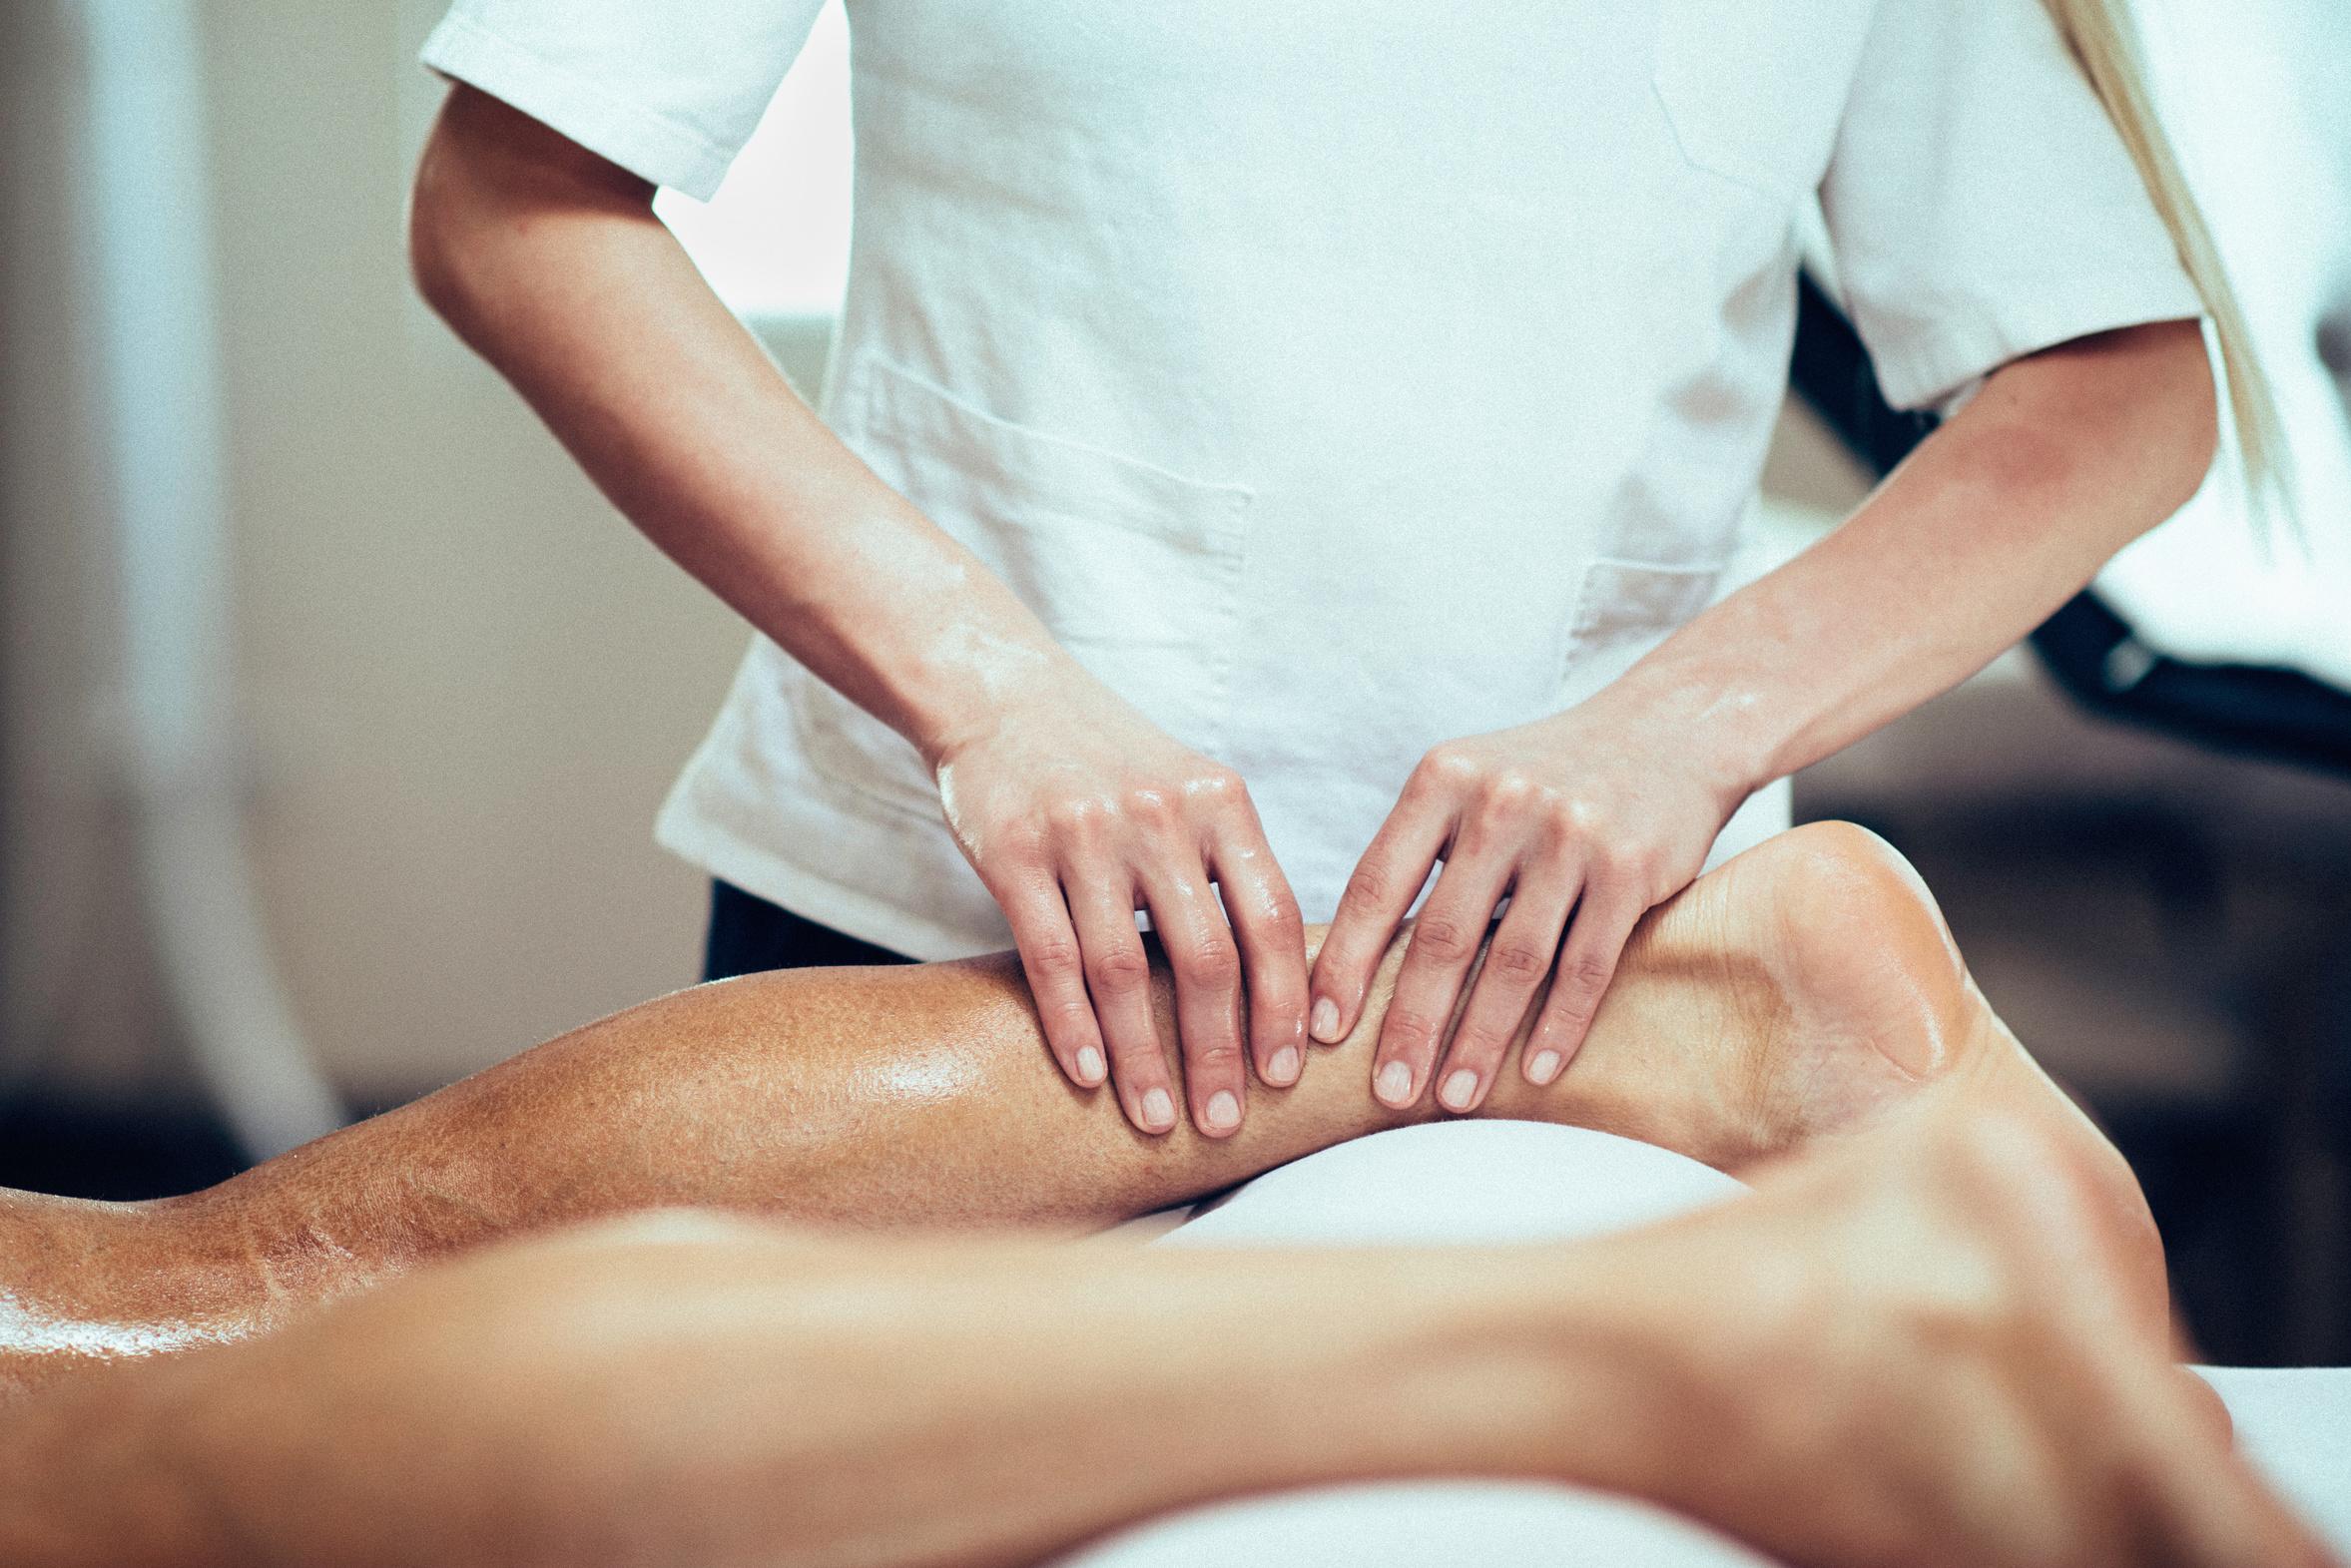 Massage as an Alternative to Opioids